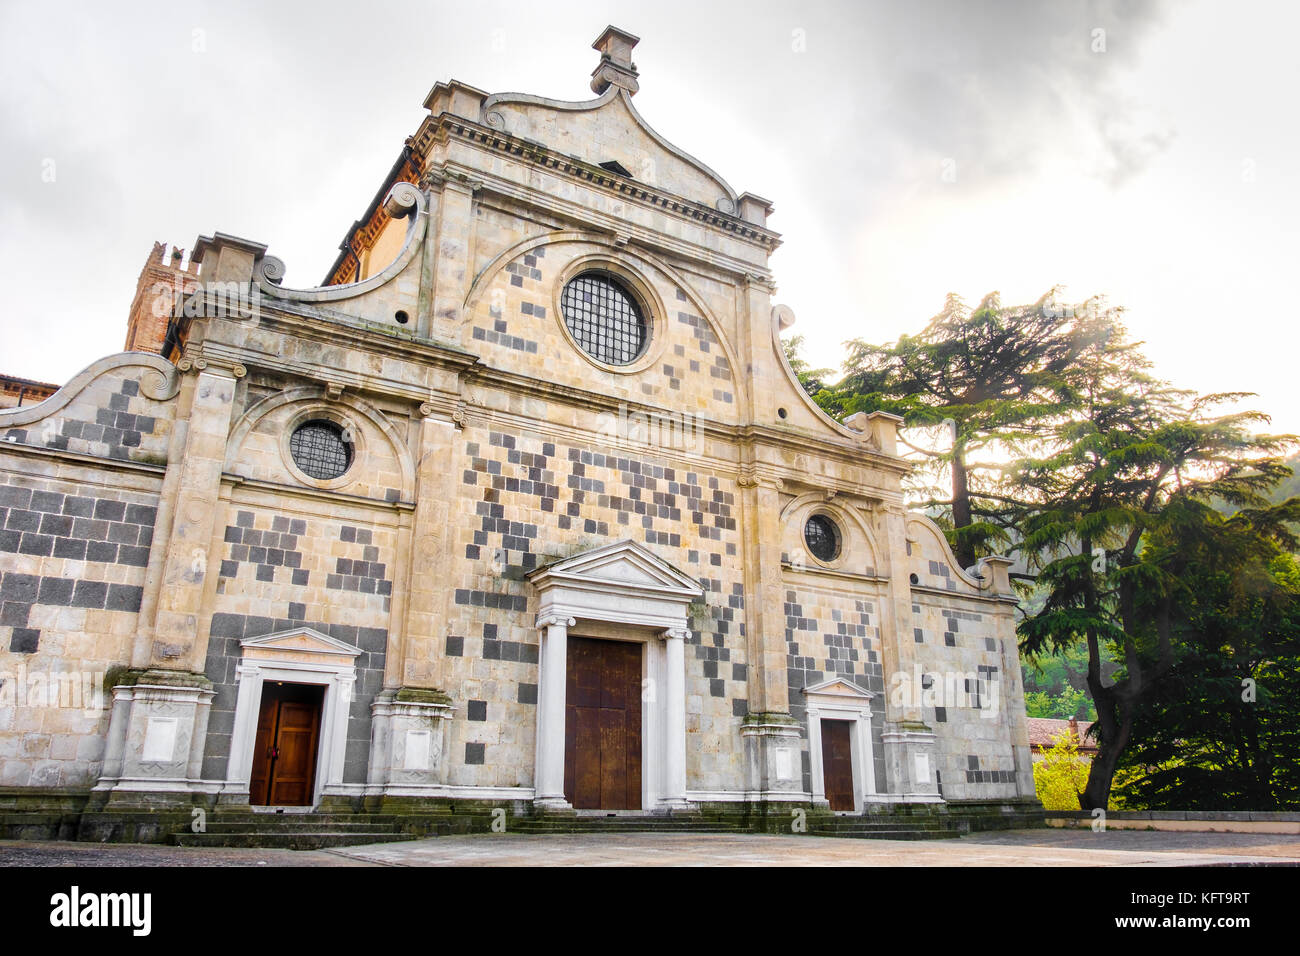 Abbazia di Praglia facciata (abbazia di Praglia) colli euganei - Padova (colli euganei - Padova - Italia Foto Stock